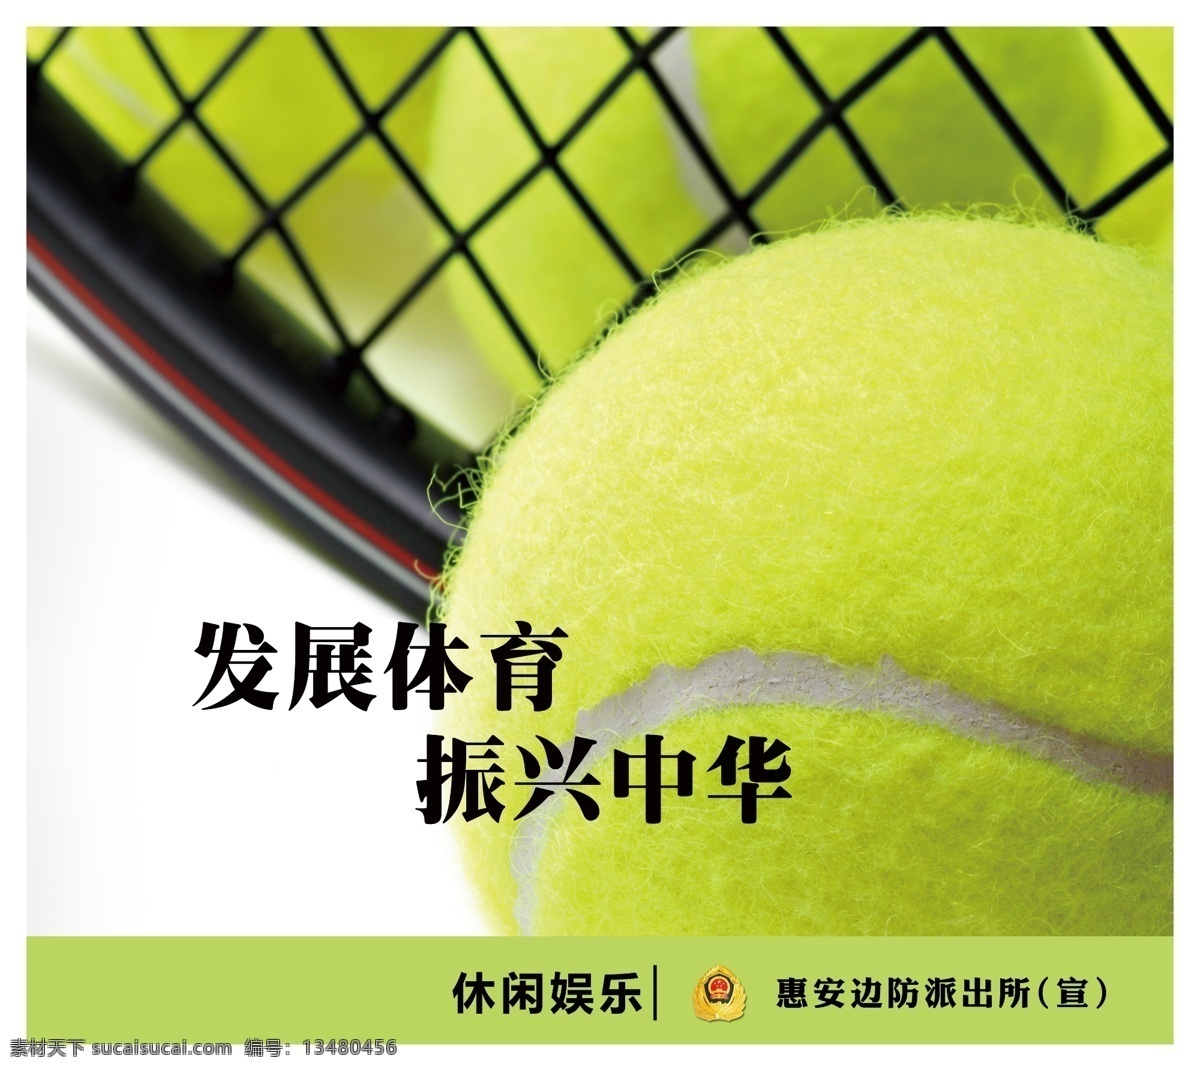 广告设计模板 球拍 网球 休闲娱乐 源文件 体育 看板 模板下载 体育看板 其他海报设计